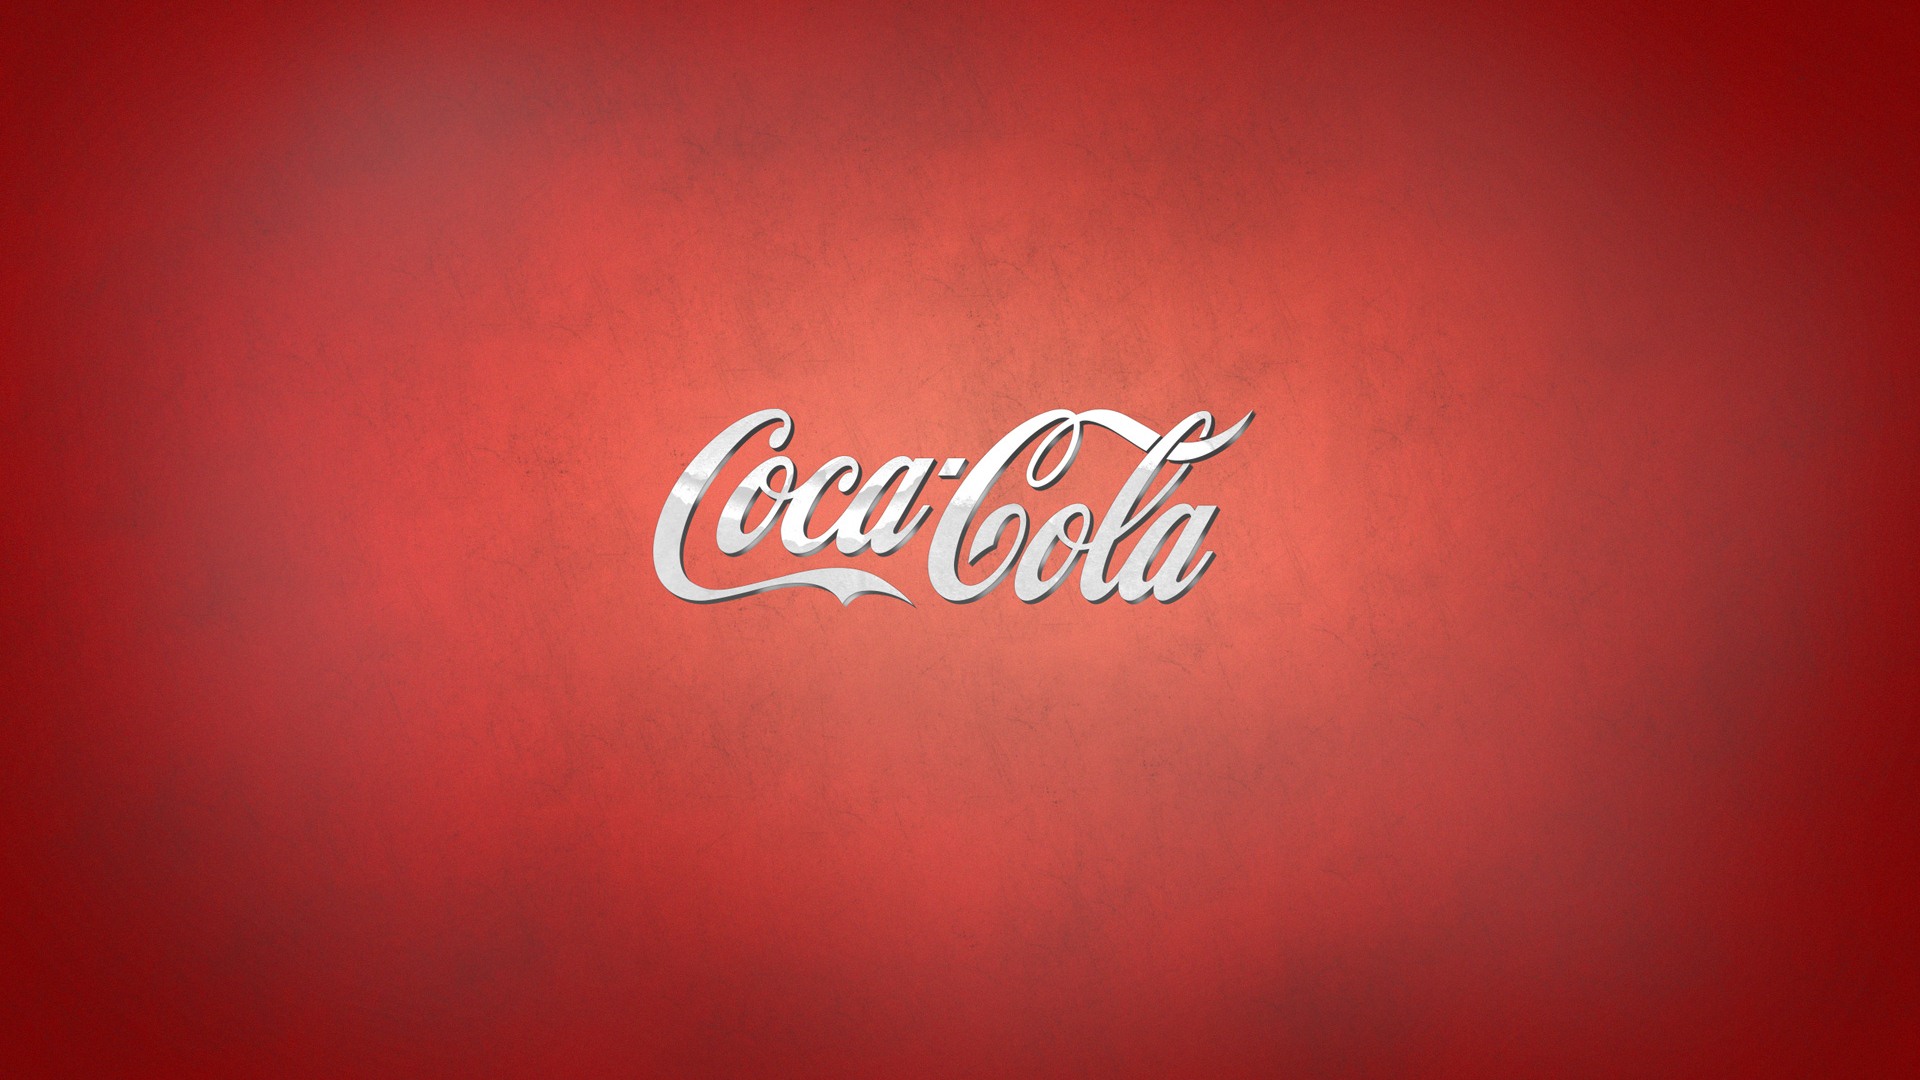 Coca-Cola beautiful ad wallpaper #16 - 1920x1080